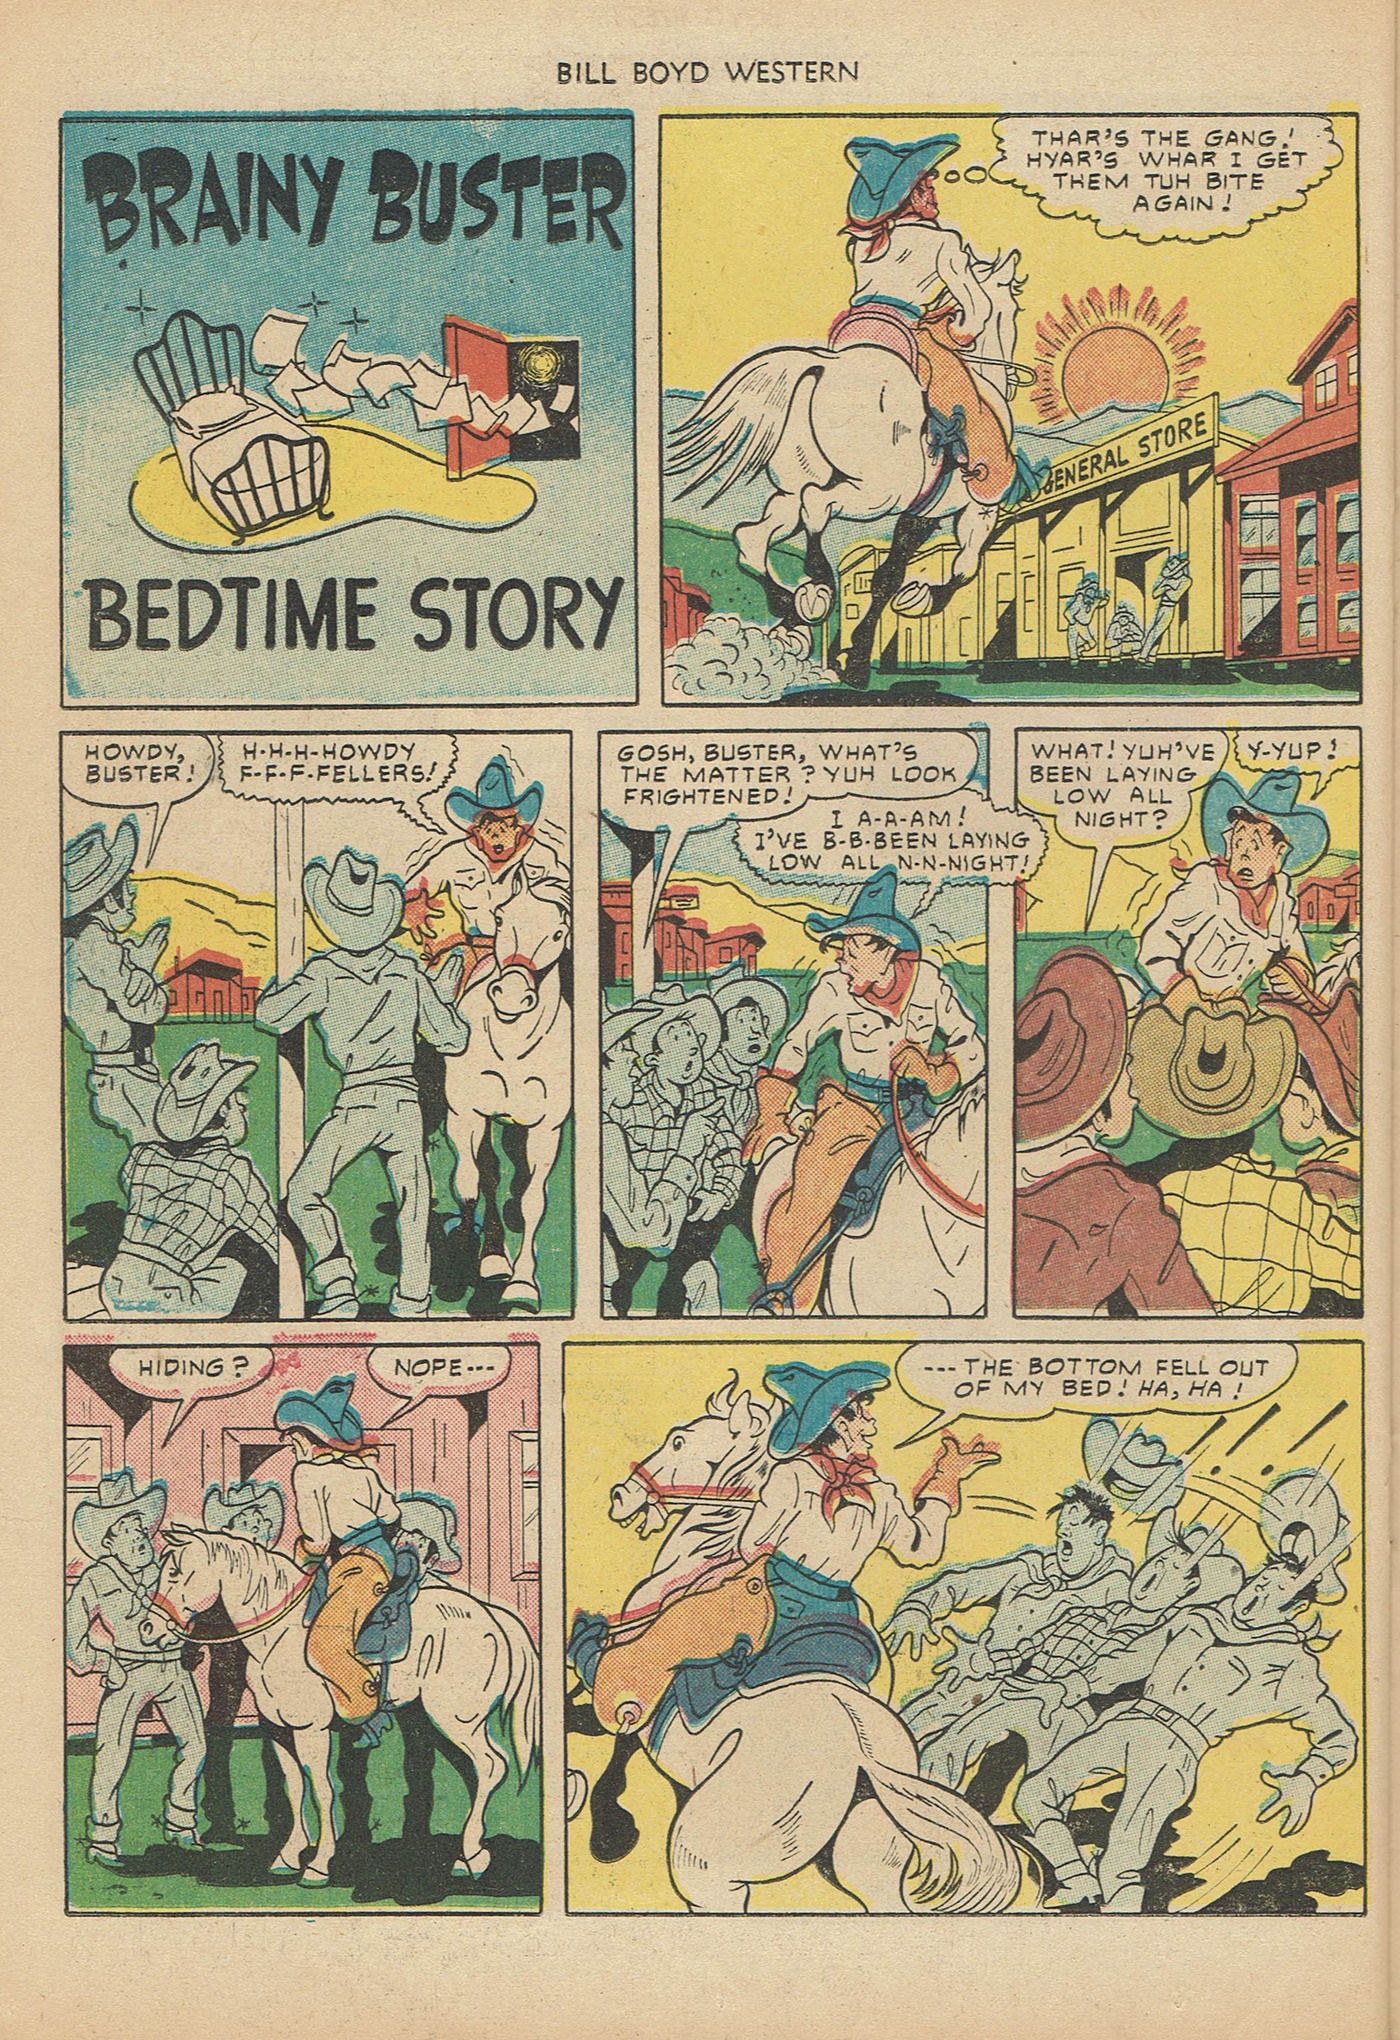 Read online Bill Boyd Western comic -  Issue #6 - 30